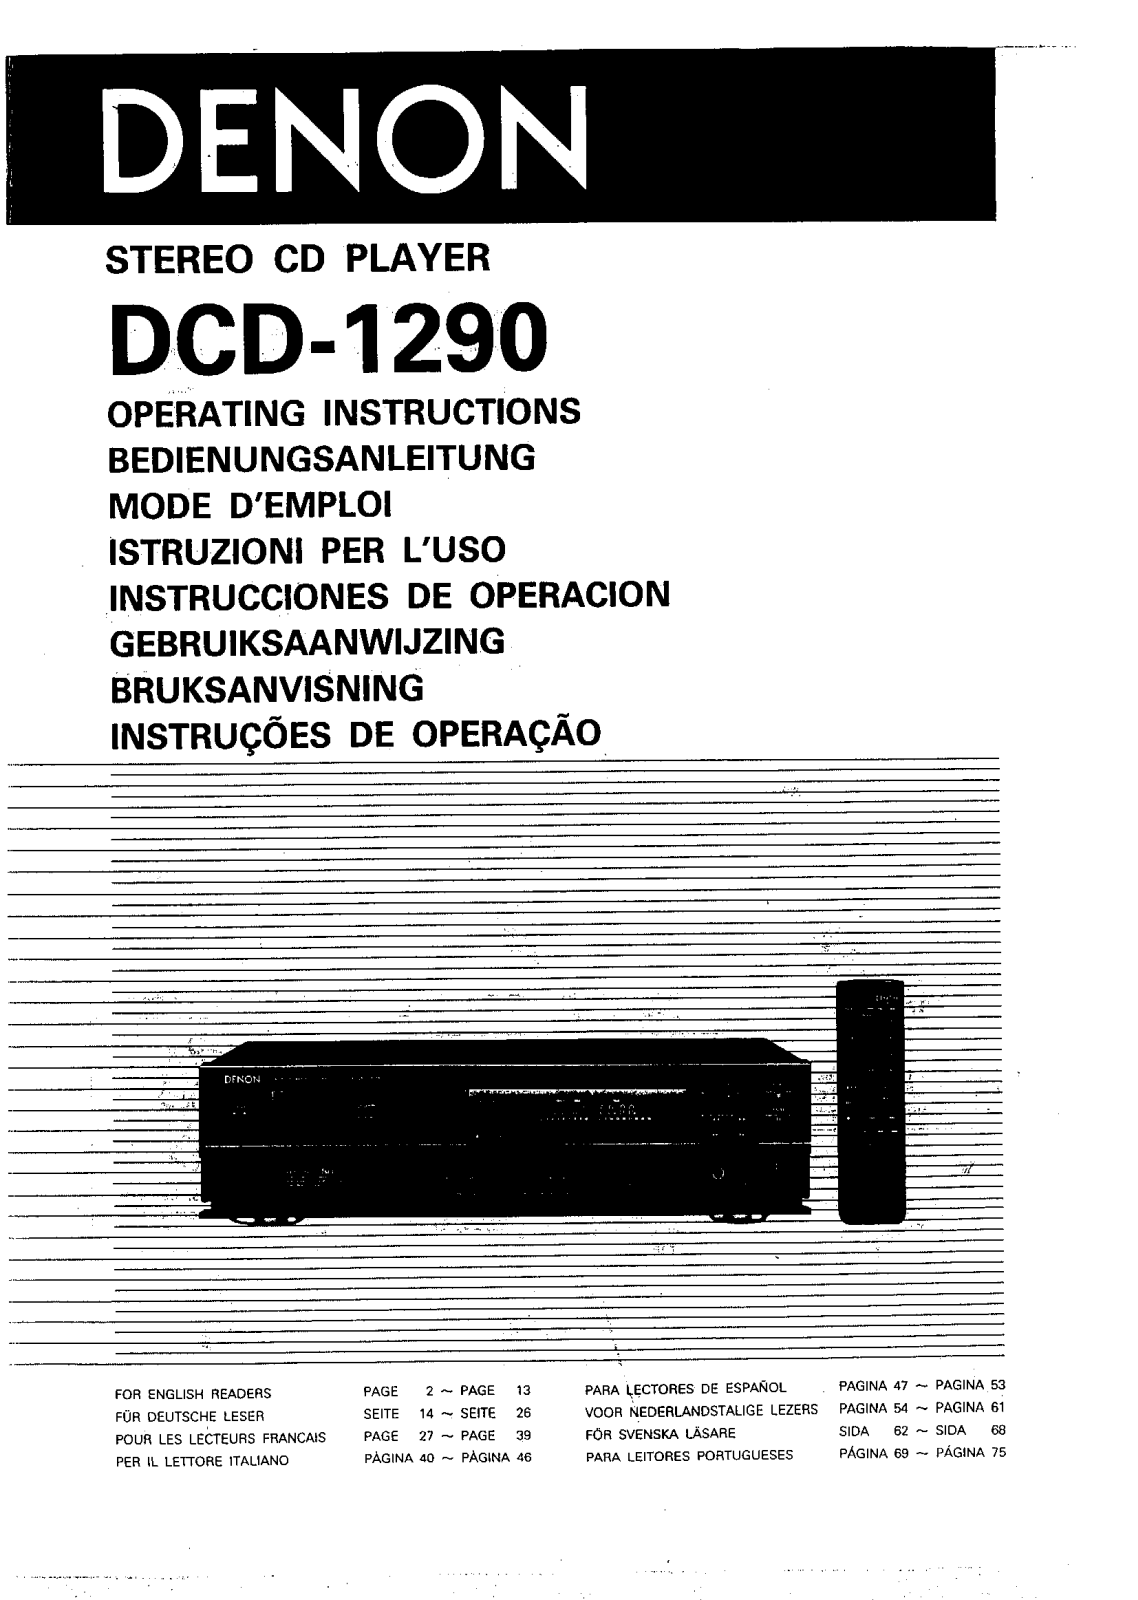 Denon DCD-1290 Owner's Manual